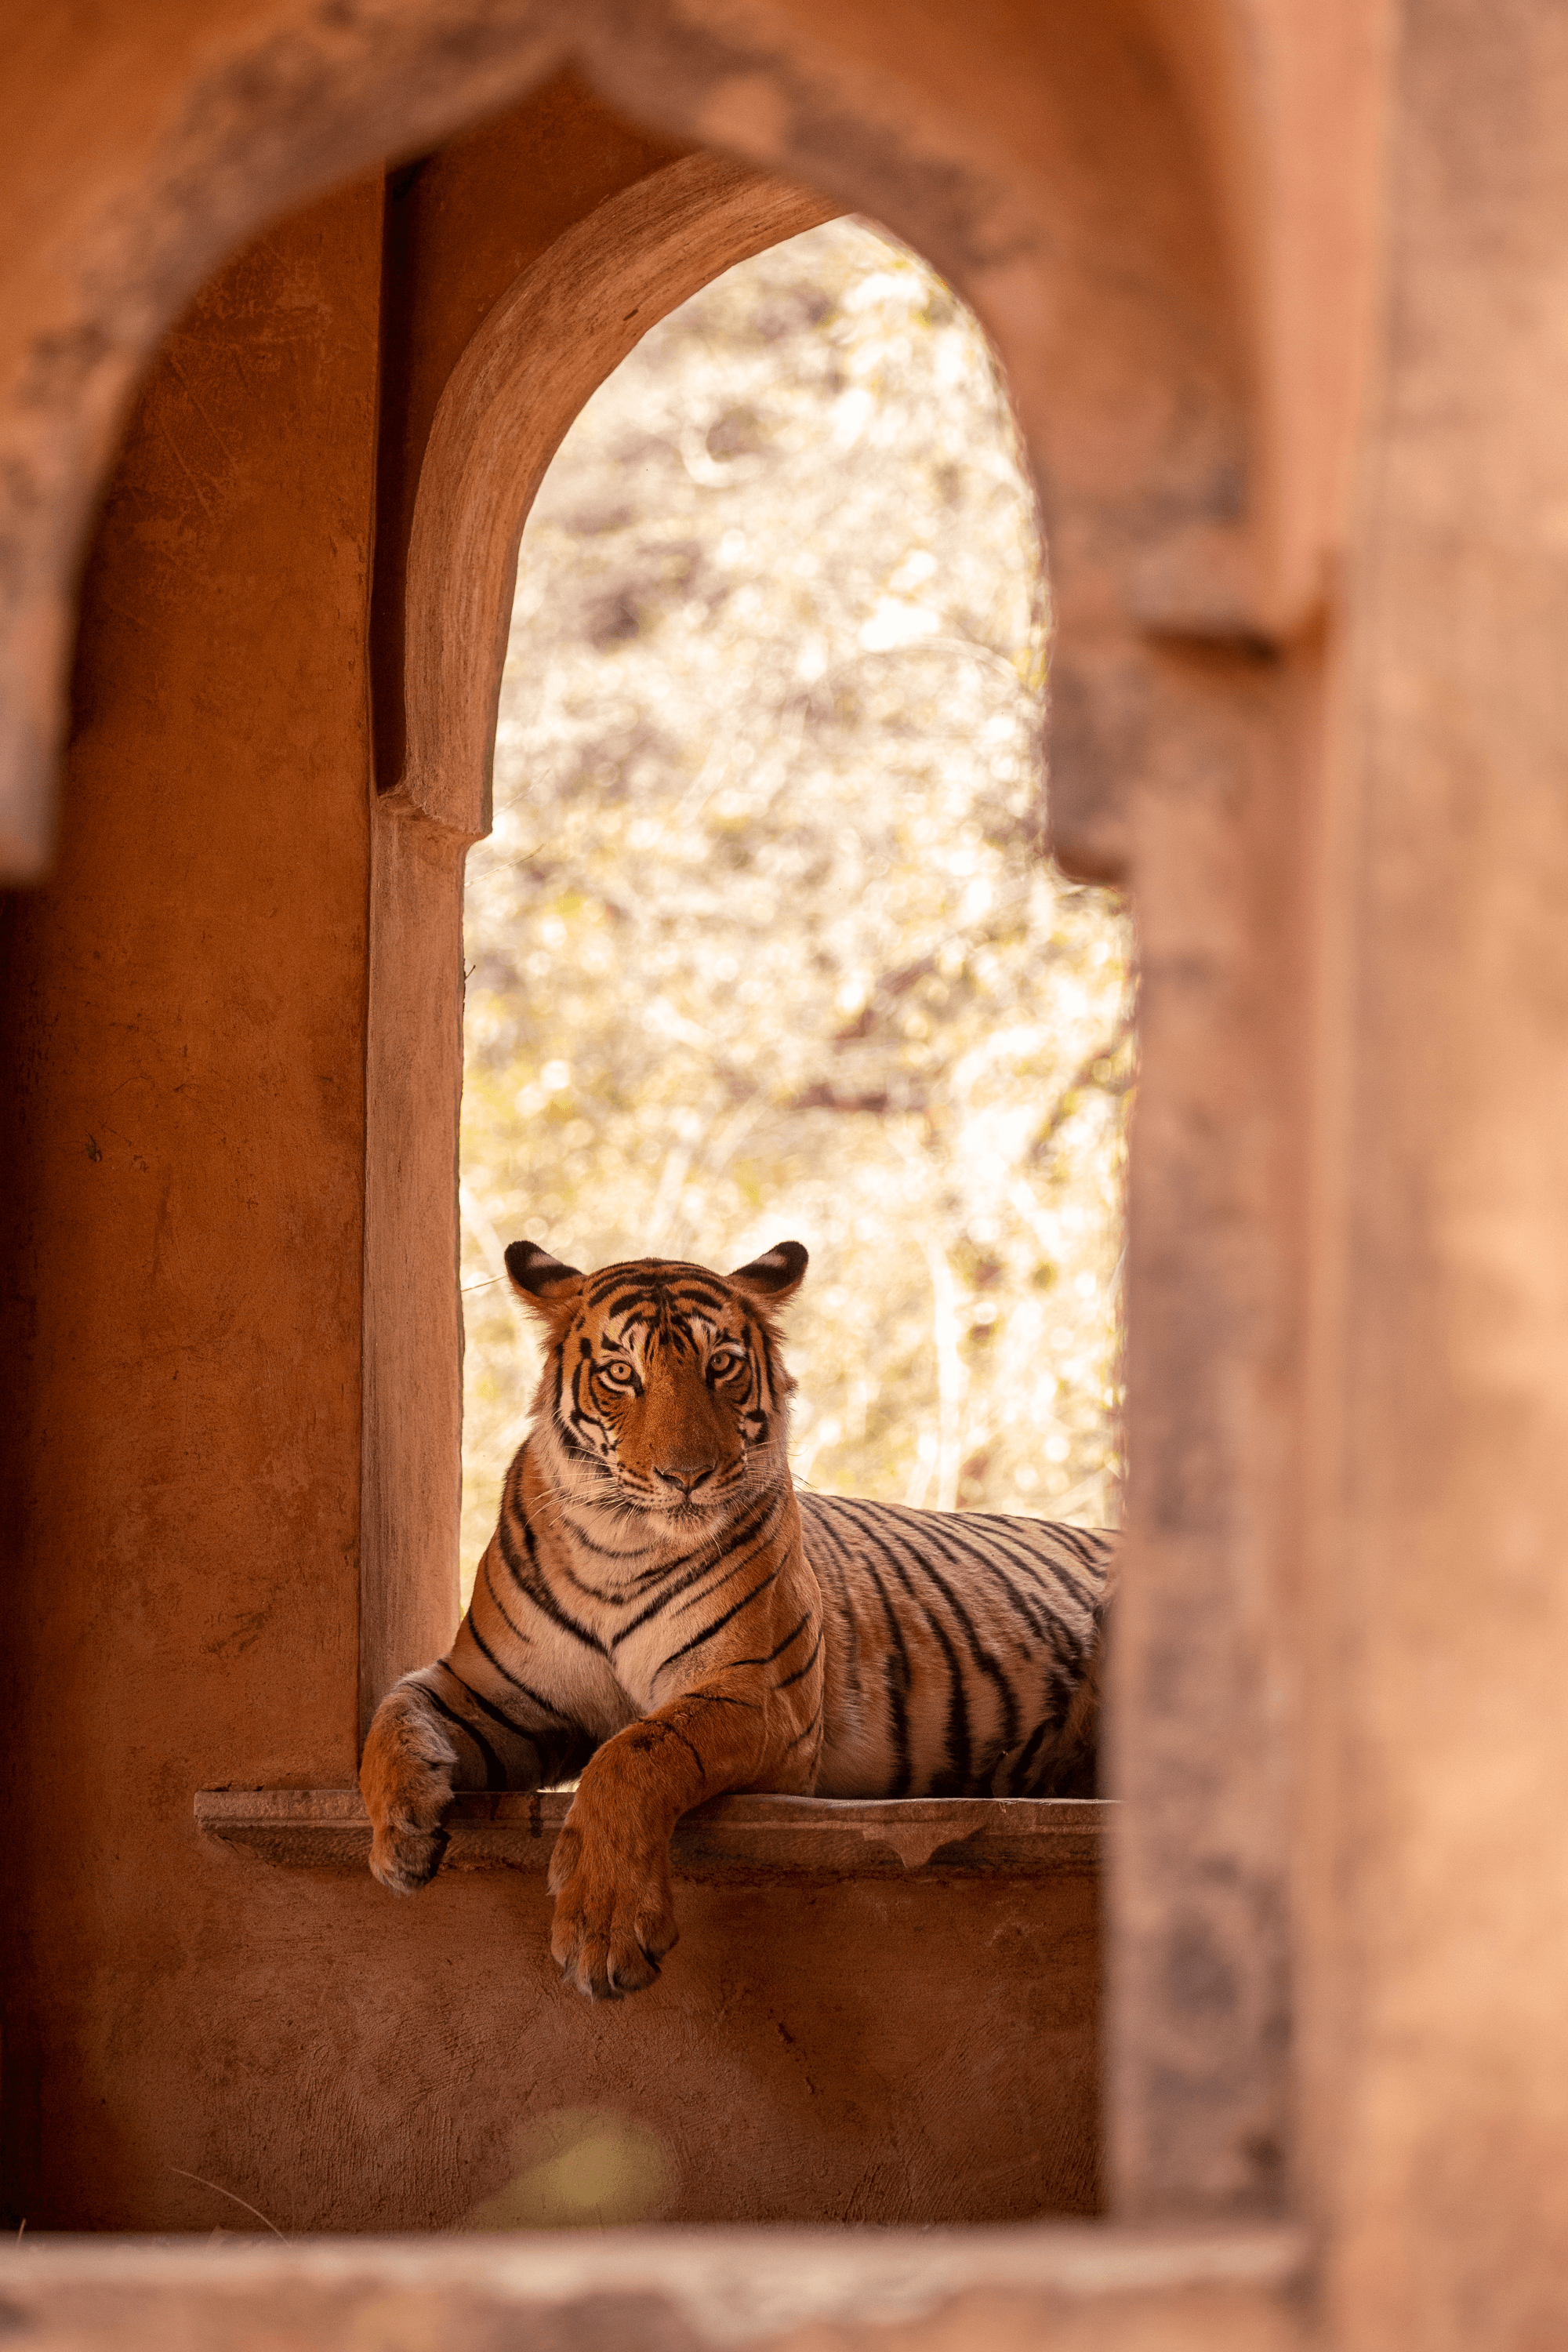 Tiger ‘Arrowhead’ in Mosque Ruin